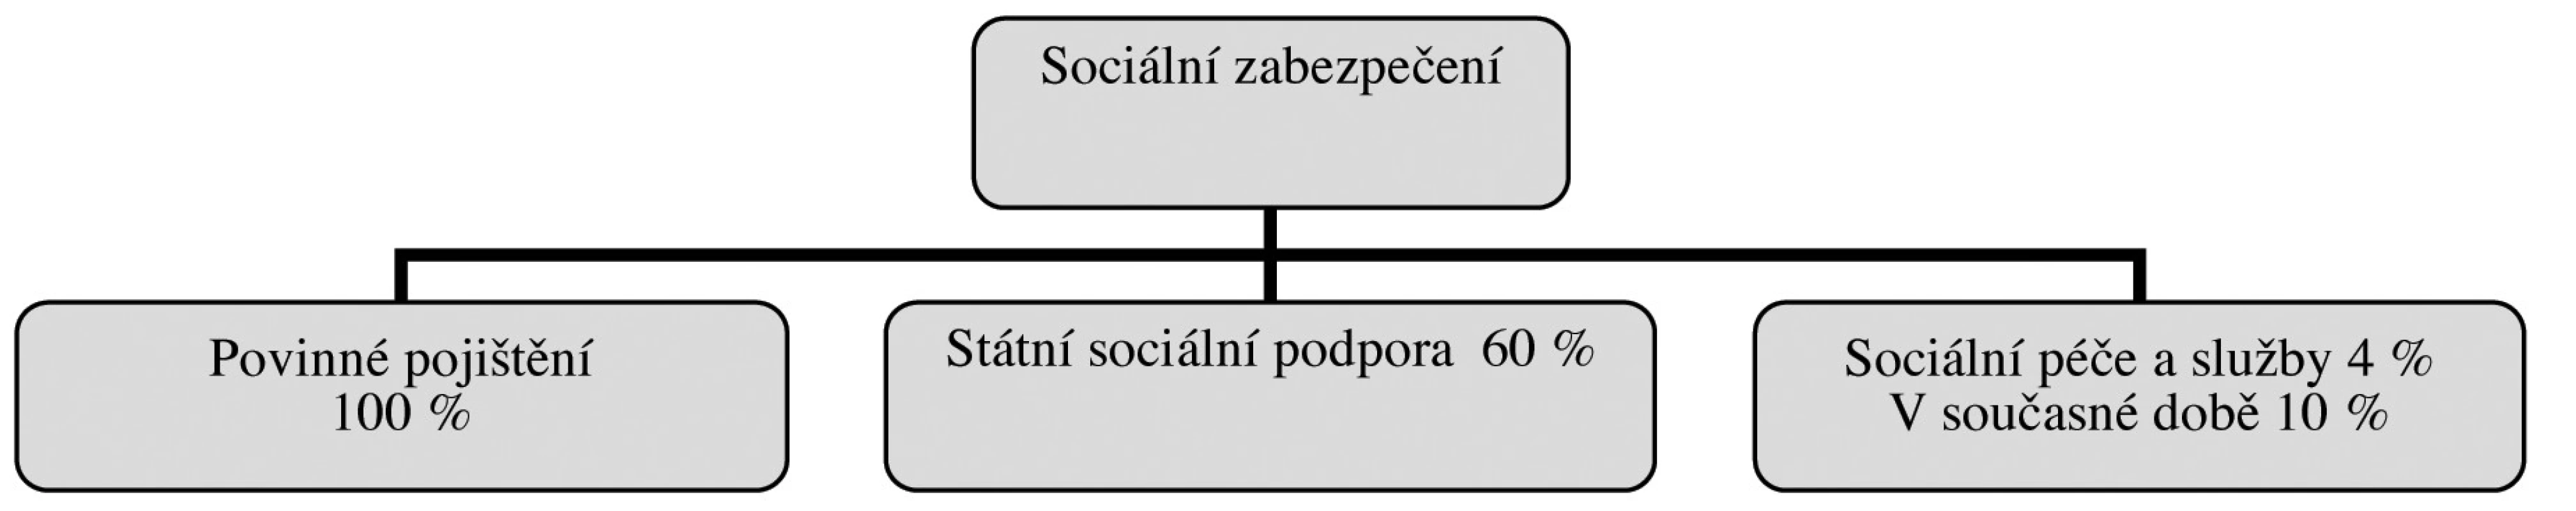 Struktura sociálního zabezpečení v České republice